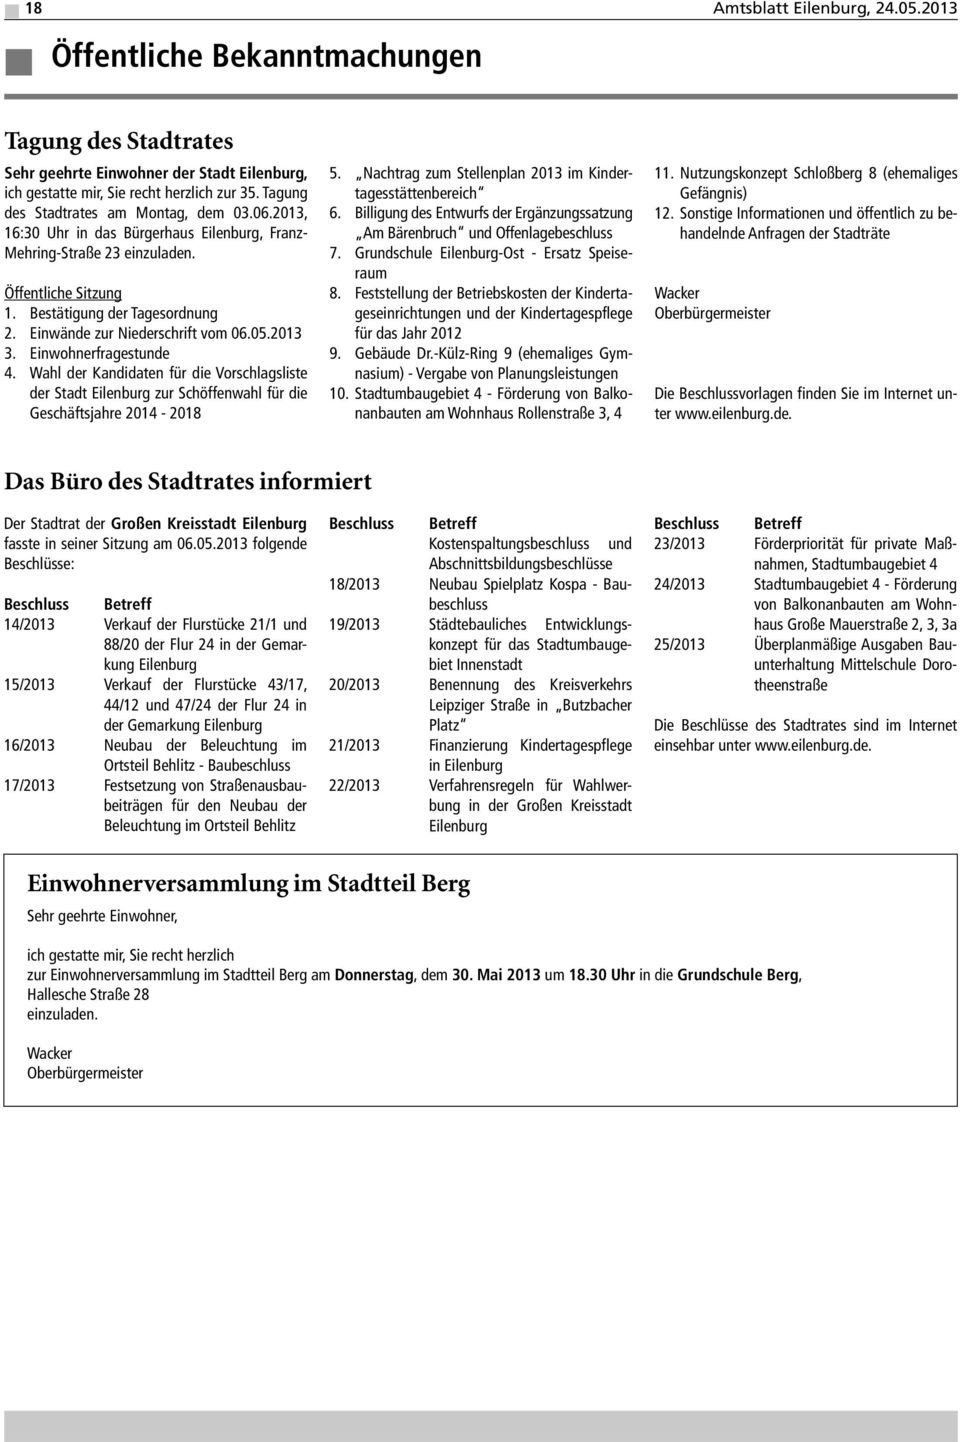 Einwände zur Niederschrift vom 06.05.2013 3. Einwohnerfragestunde 4. Wahl der Kandidaten für die Vorschlagsliste der Stadt Eilenburg zur Schöffenwahl für die Geschäftsjahre 2014-2018 5.